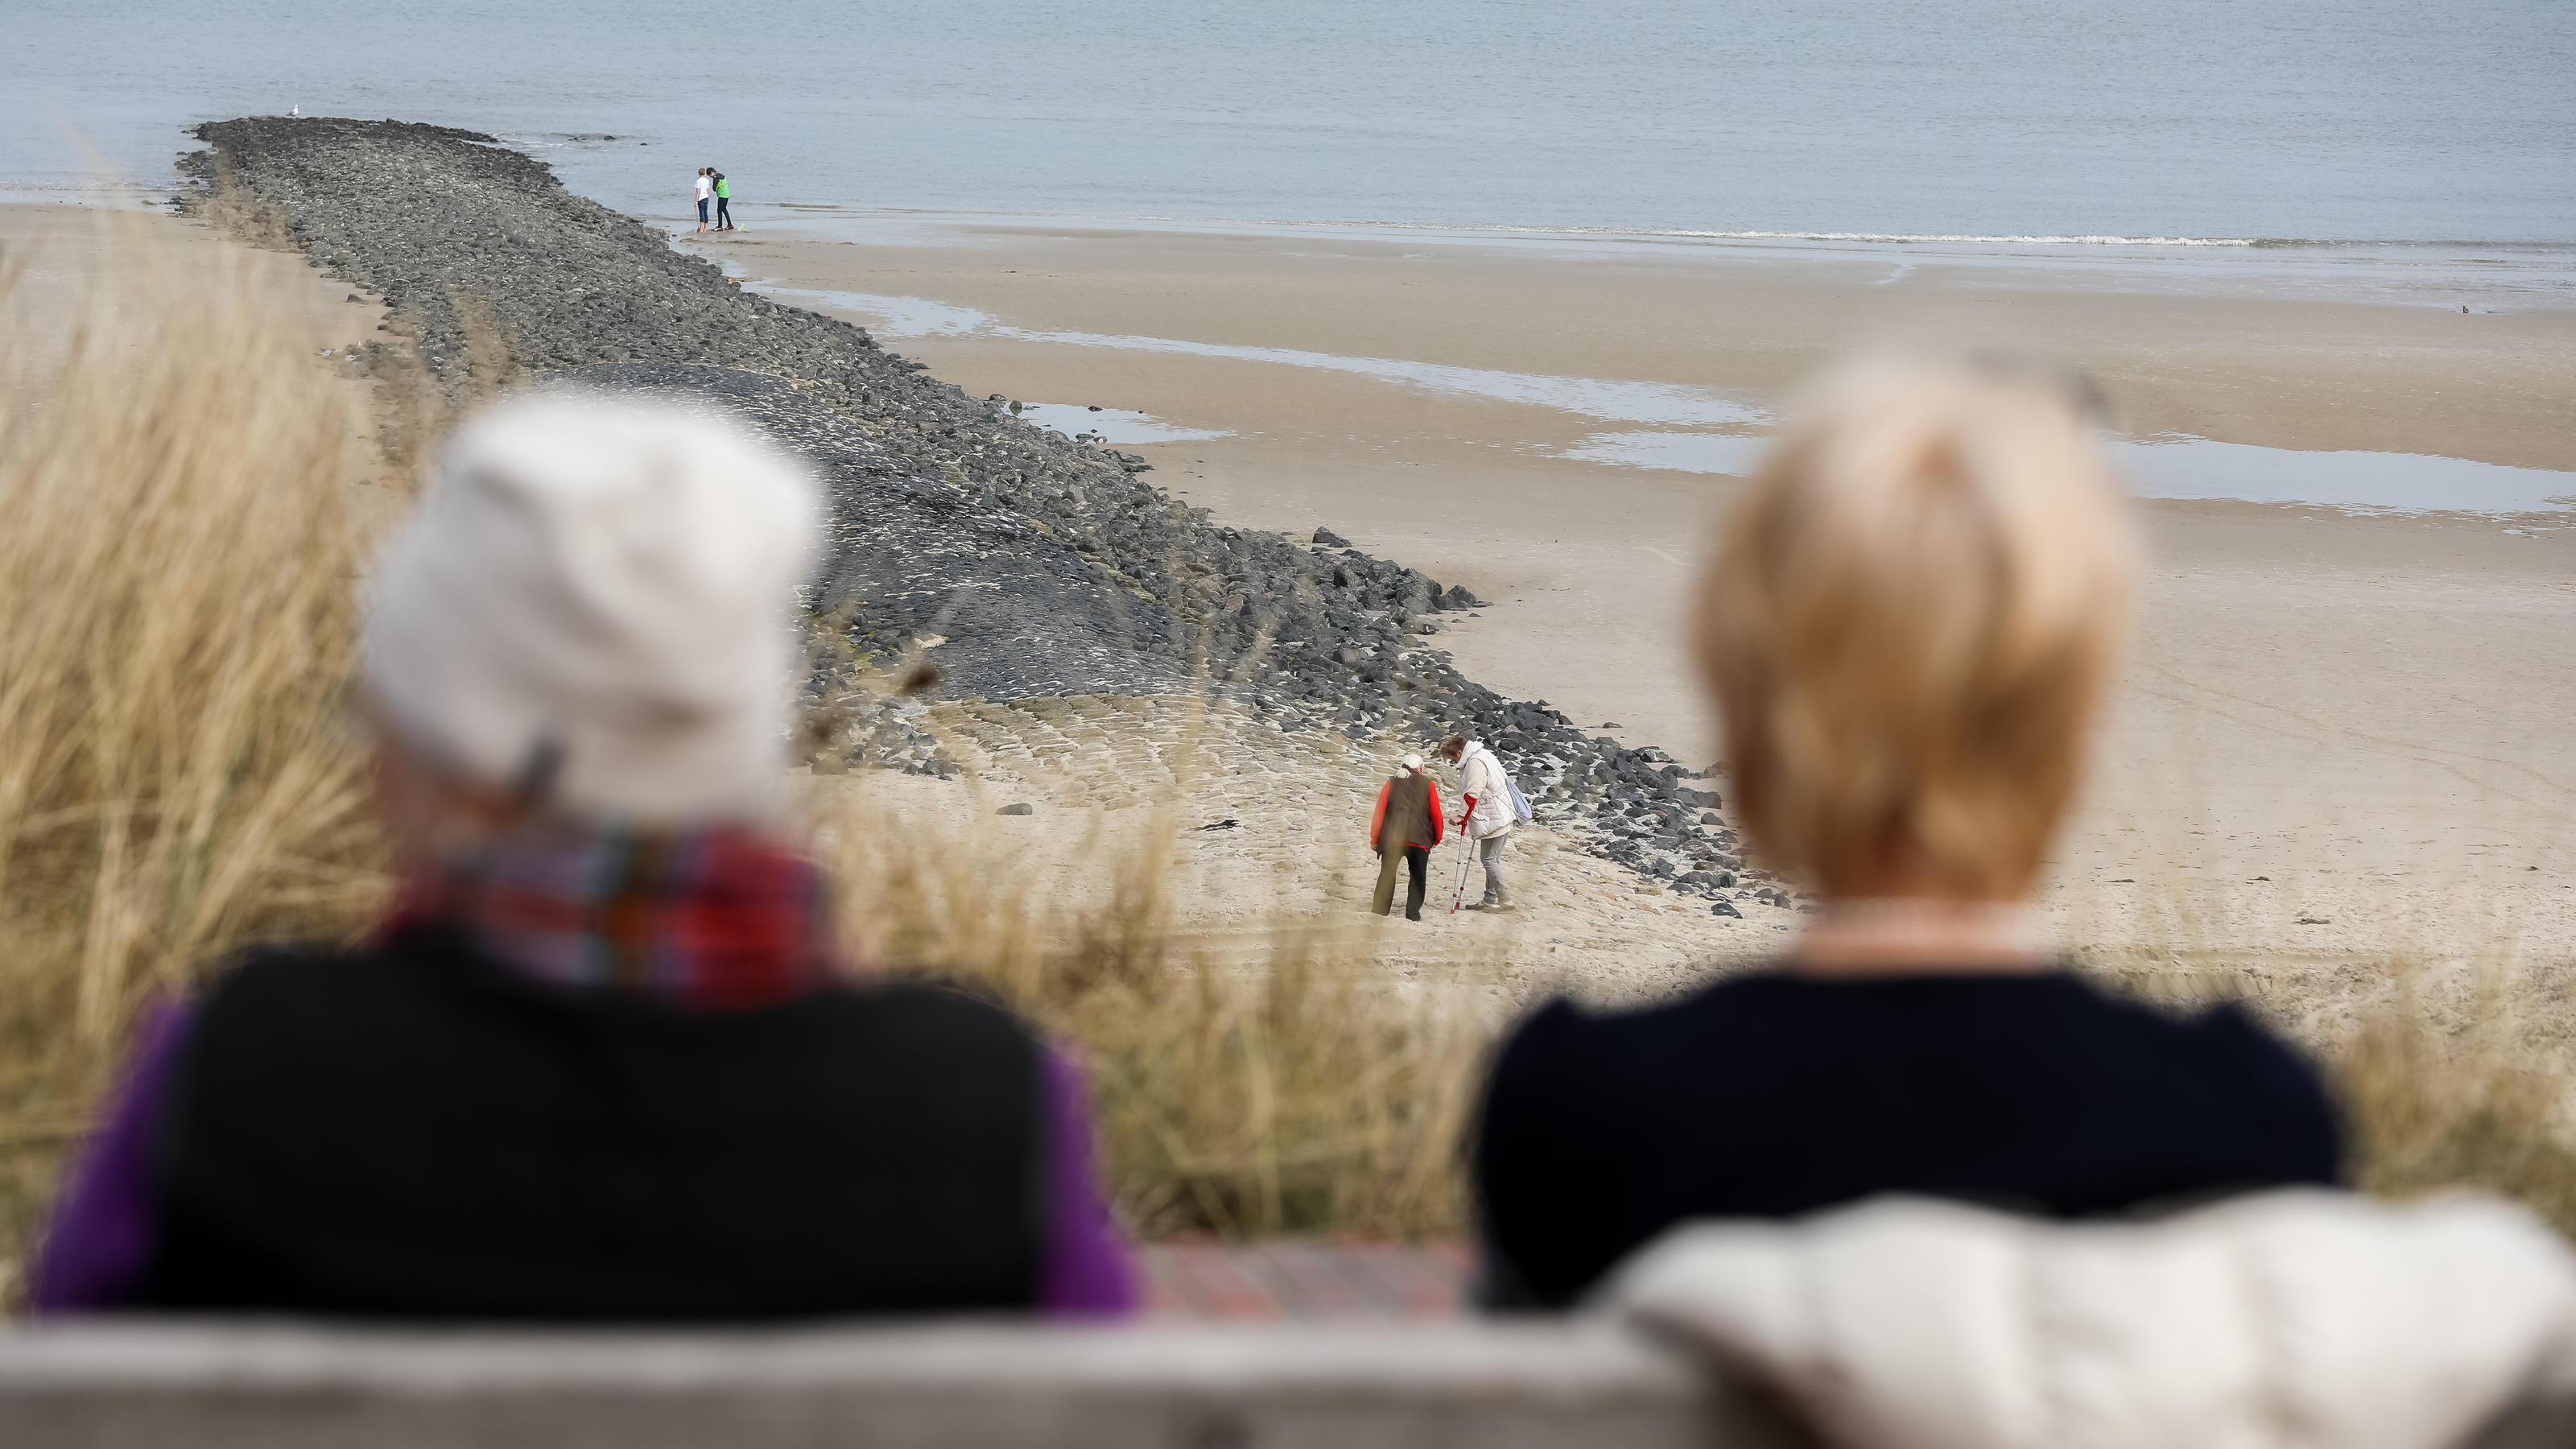 08.04.2018, Niedersachsen, Wangerooge: Zwei Frauen sitzen auf einer Bank und schauen zum Strand. Foto: Mohssen Assanimoghaddam/dpa